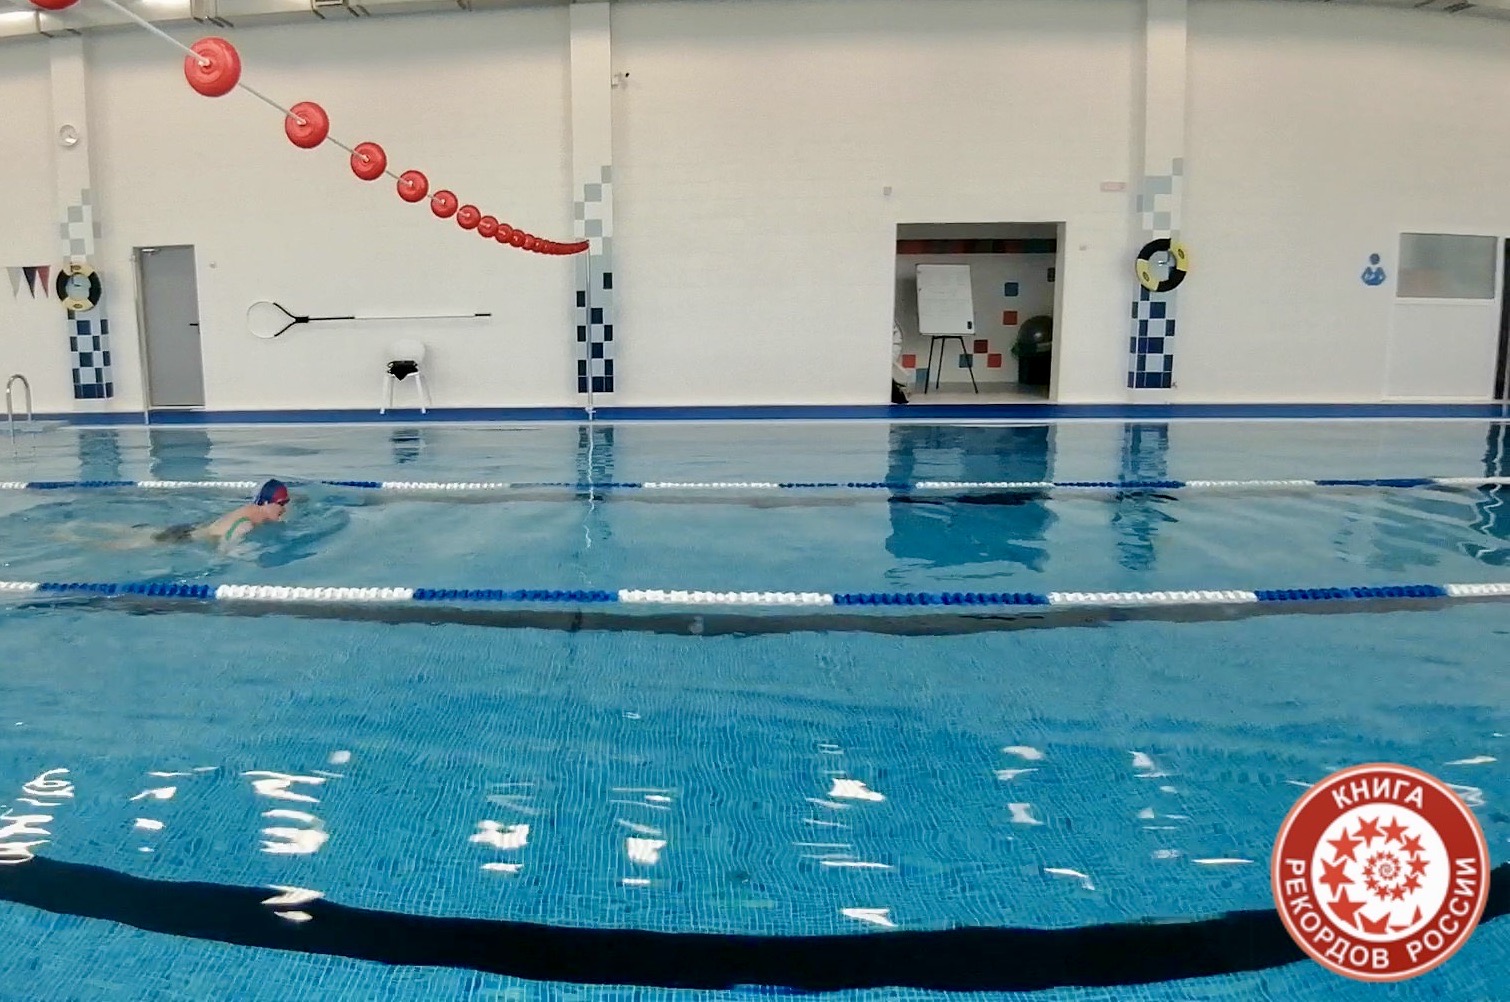 Плавание. Наименьшая продолжительность преодоления расстояния 1500 метров в бассейне вольным стилем в России (мужчины, 60+ лет)